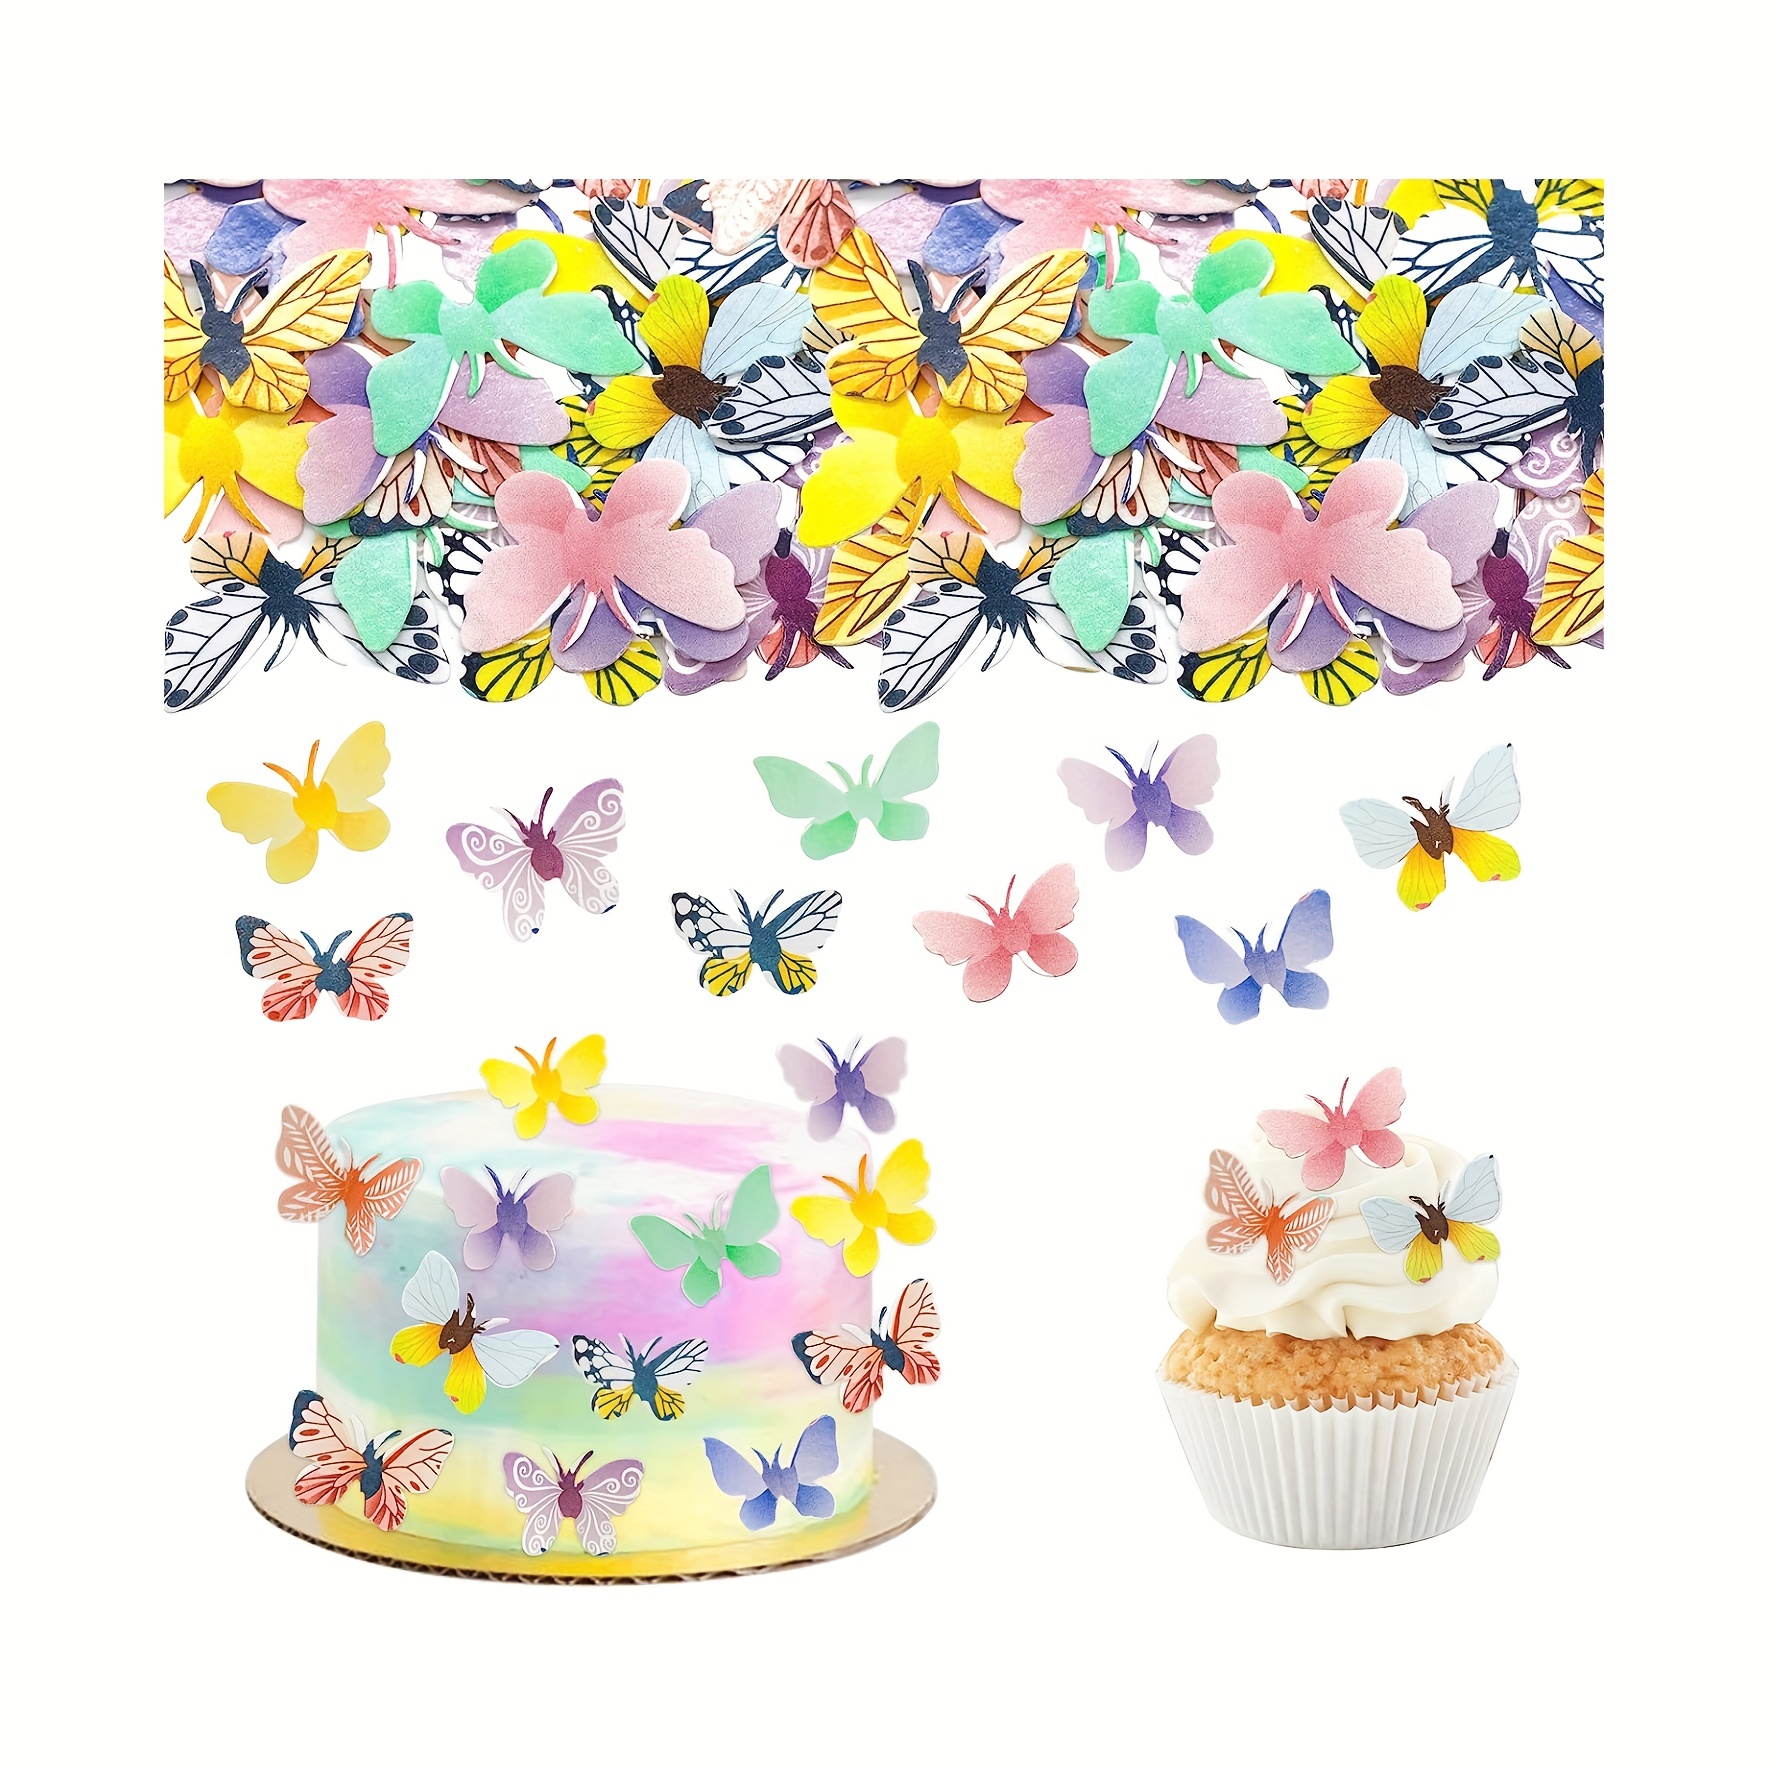 Cake and Dreams Store - Ahora ya puedes decorar tus pasteles 🎂 con la  nueva tendencia de Mariposas Comestibles y darles un toque super cute  💖😍🥰 Checa nuestro catálogo en